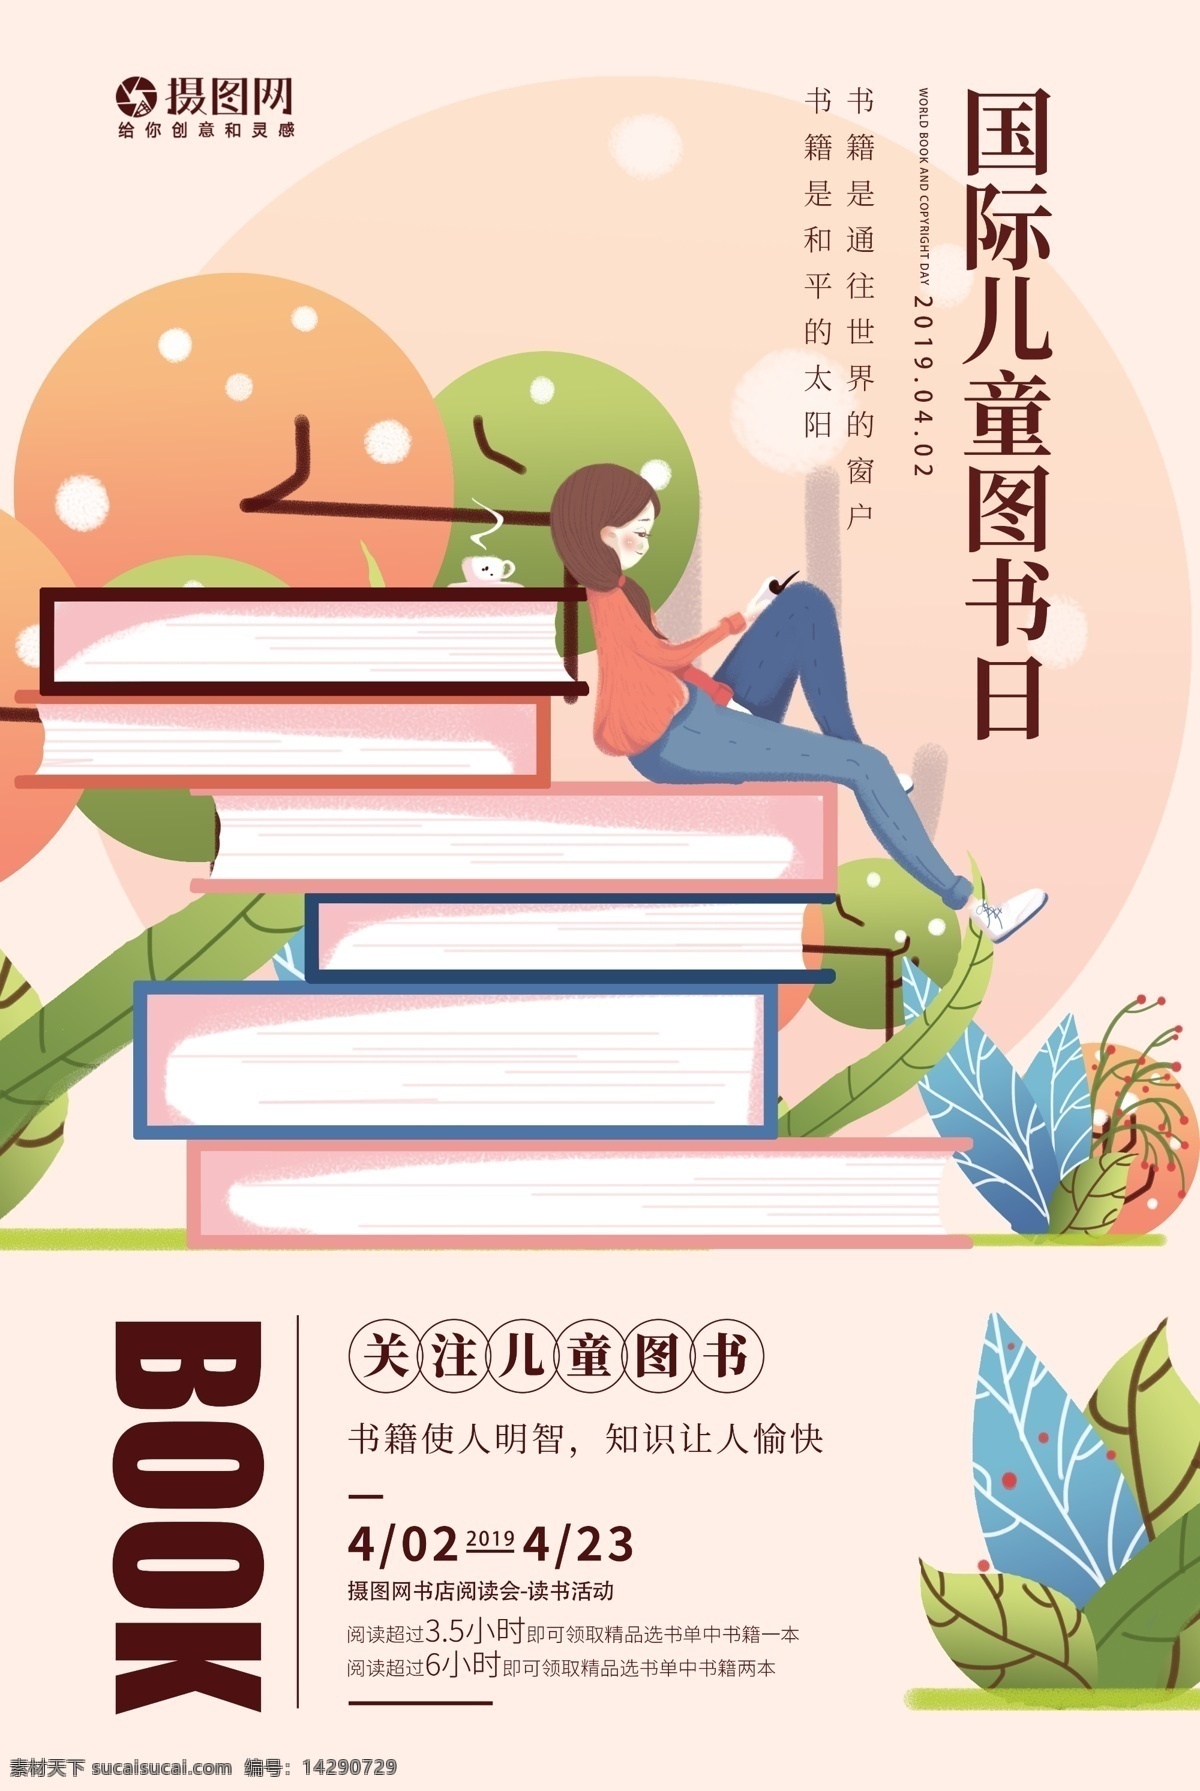 国际 儿童 图书节 海报 读书 日 童话书 儿童读书日 童话故事 故事书 孩子 看书 图书